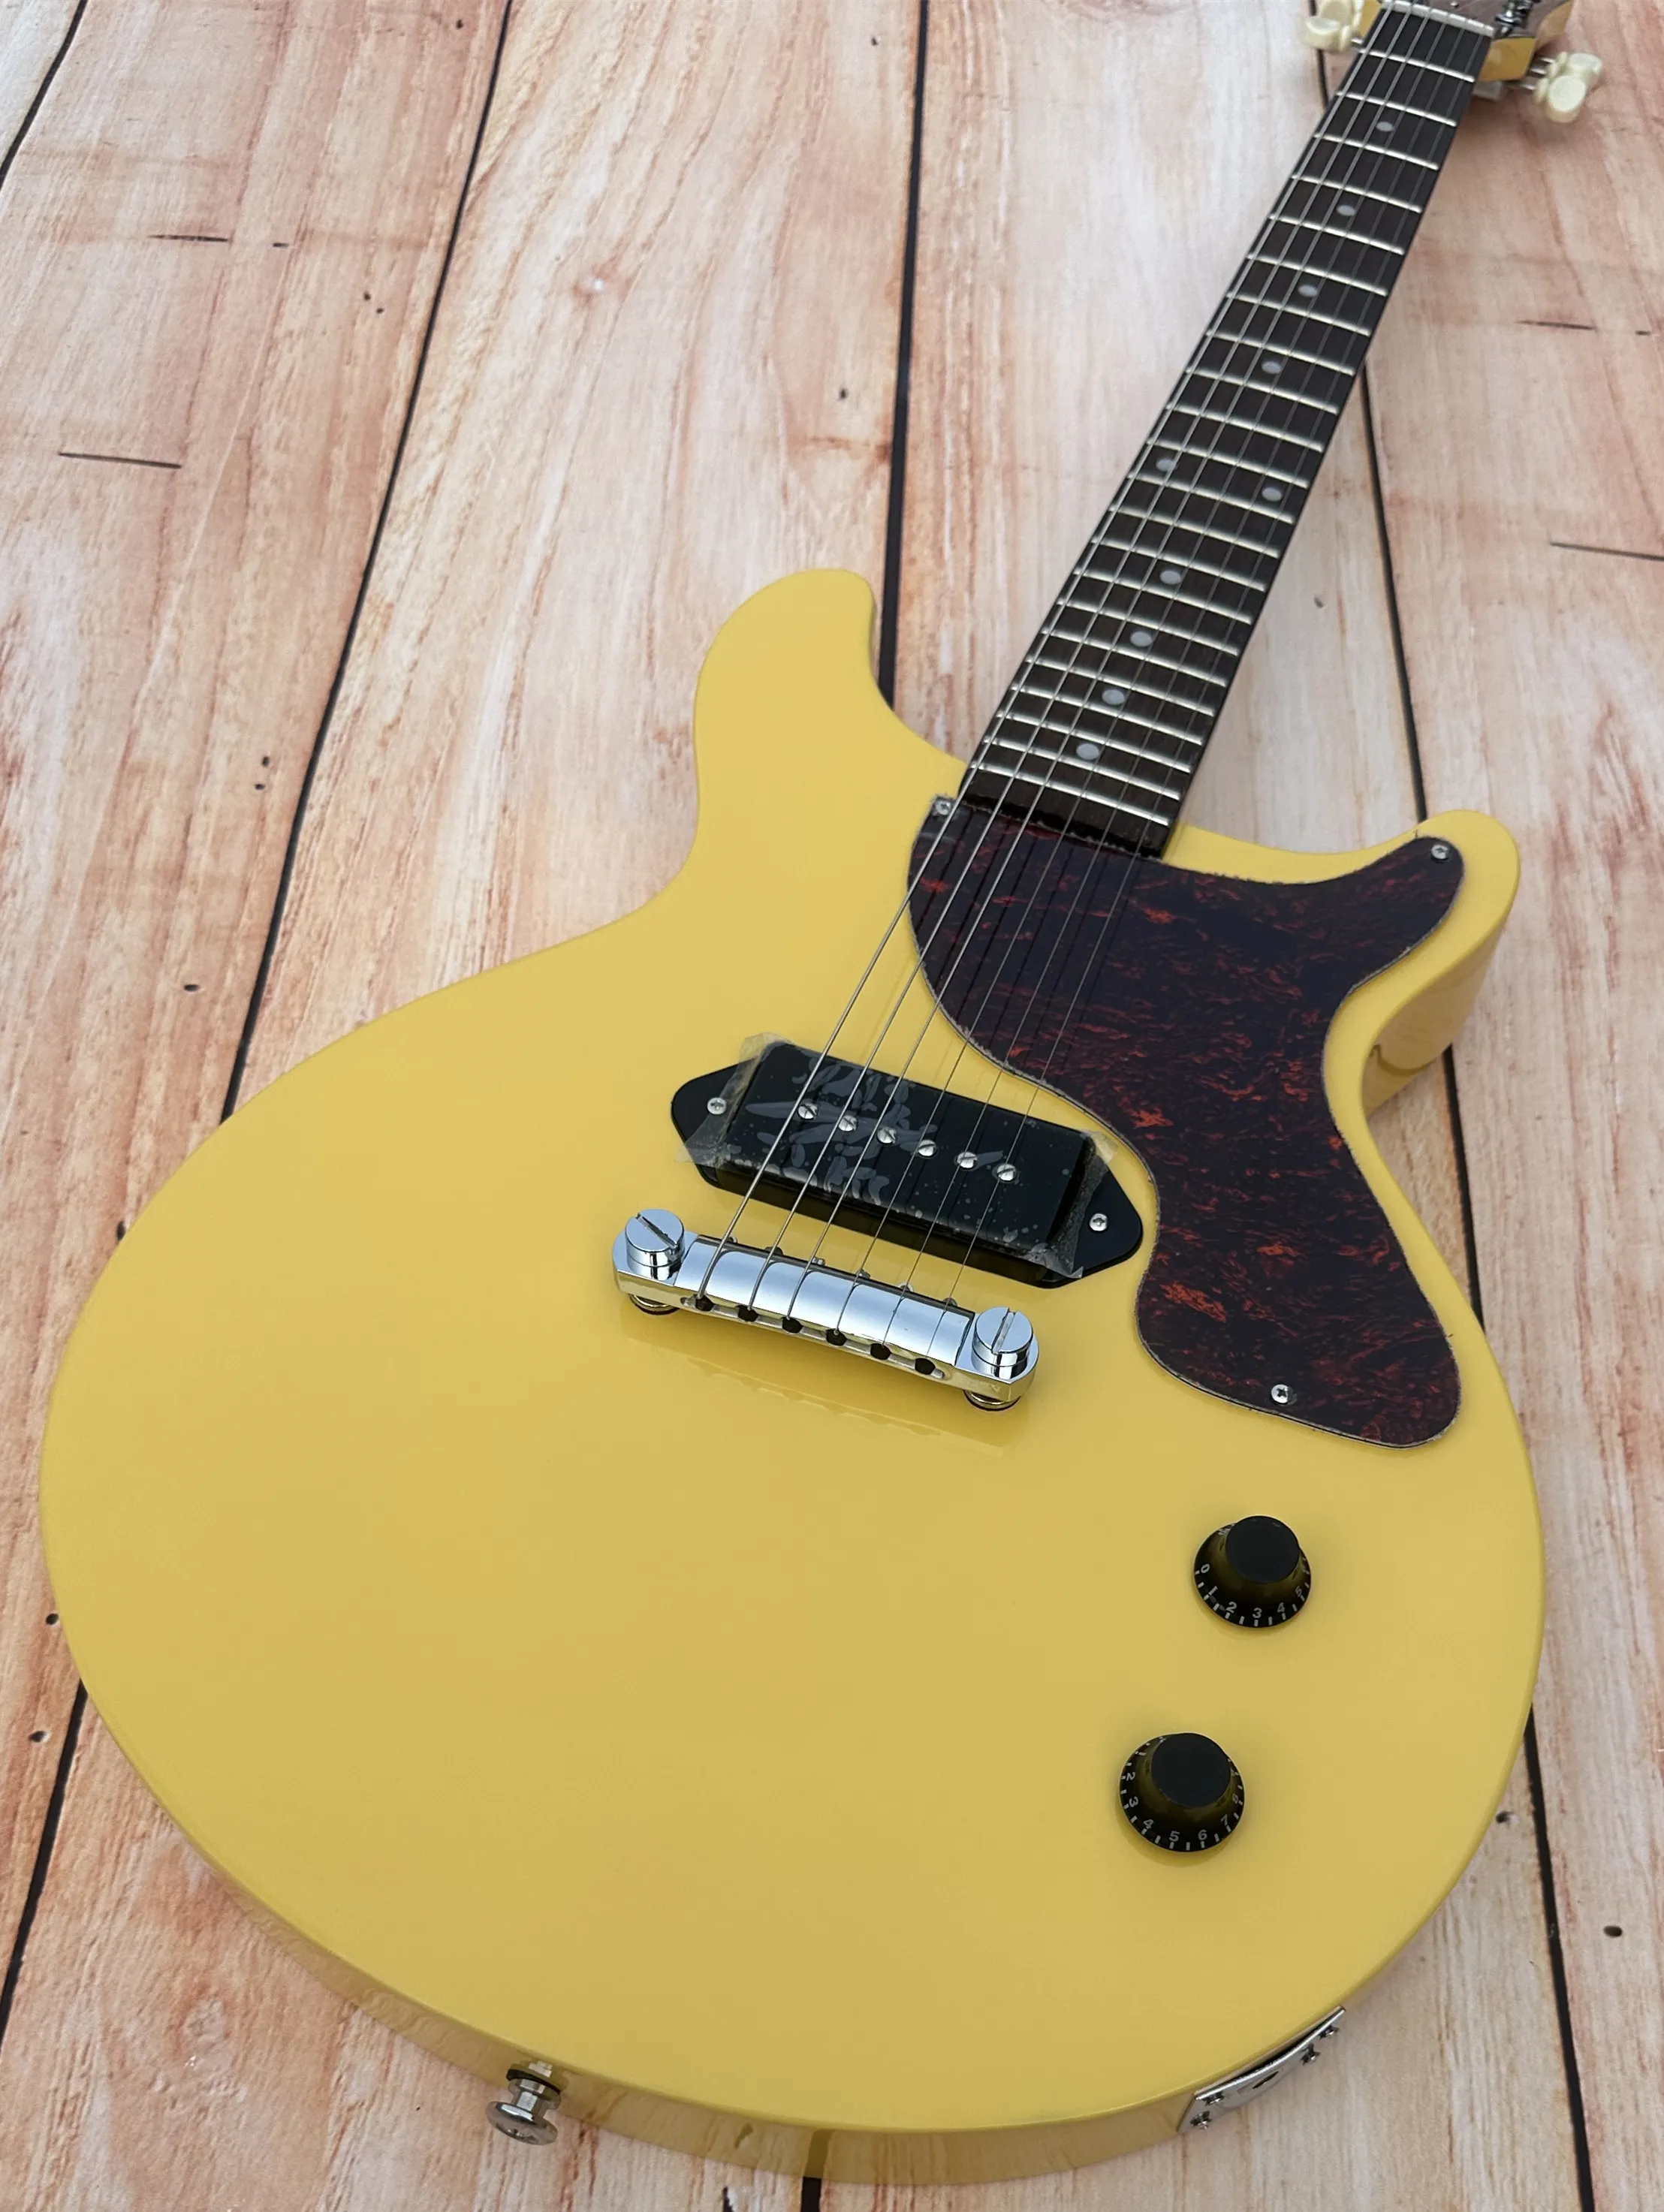 Standard elektrisk gitarr, TV gul, gräddegul, ljus, grädde vit retro tuner, tillgänglig, blixtfri frakt